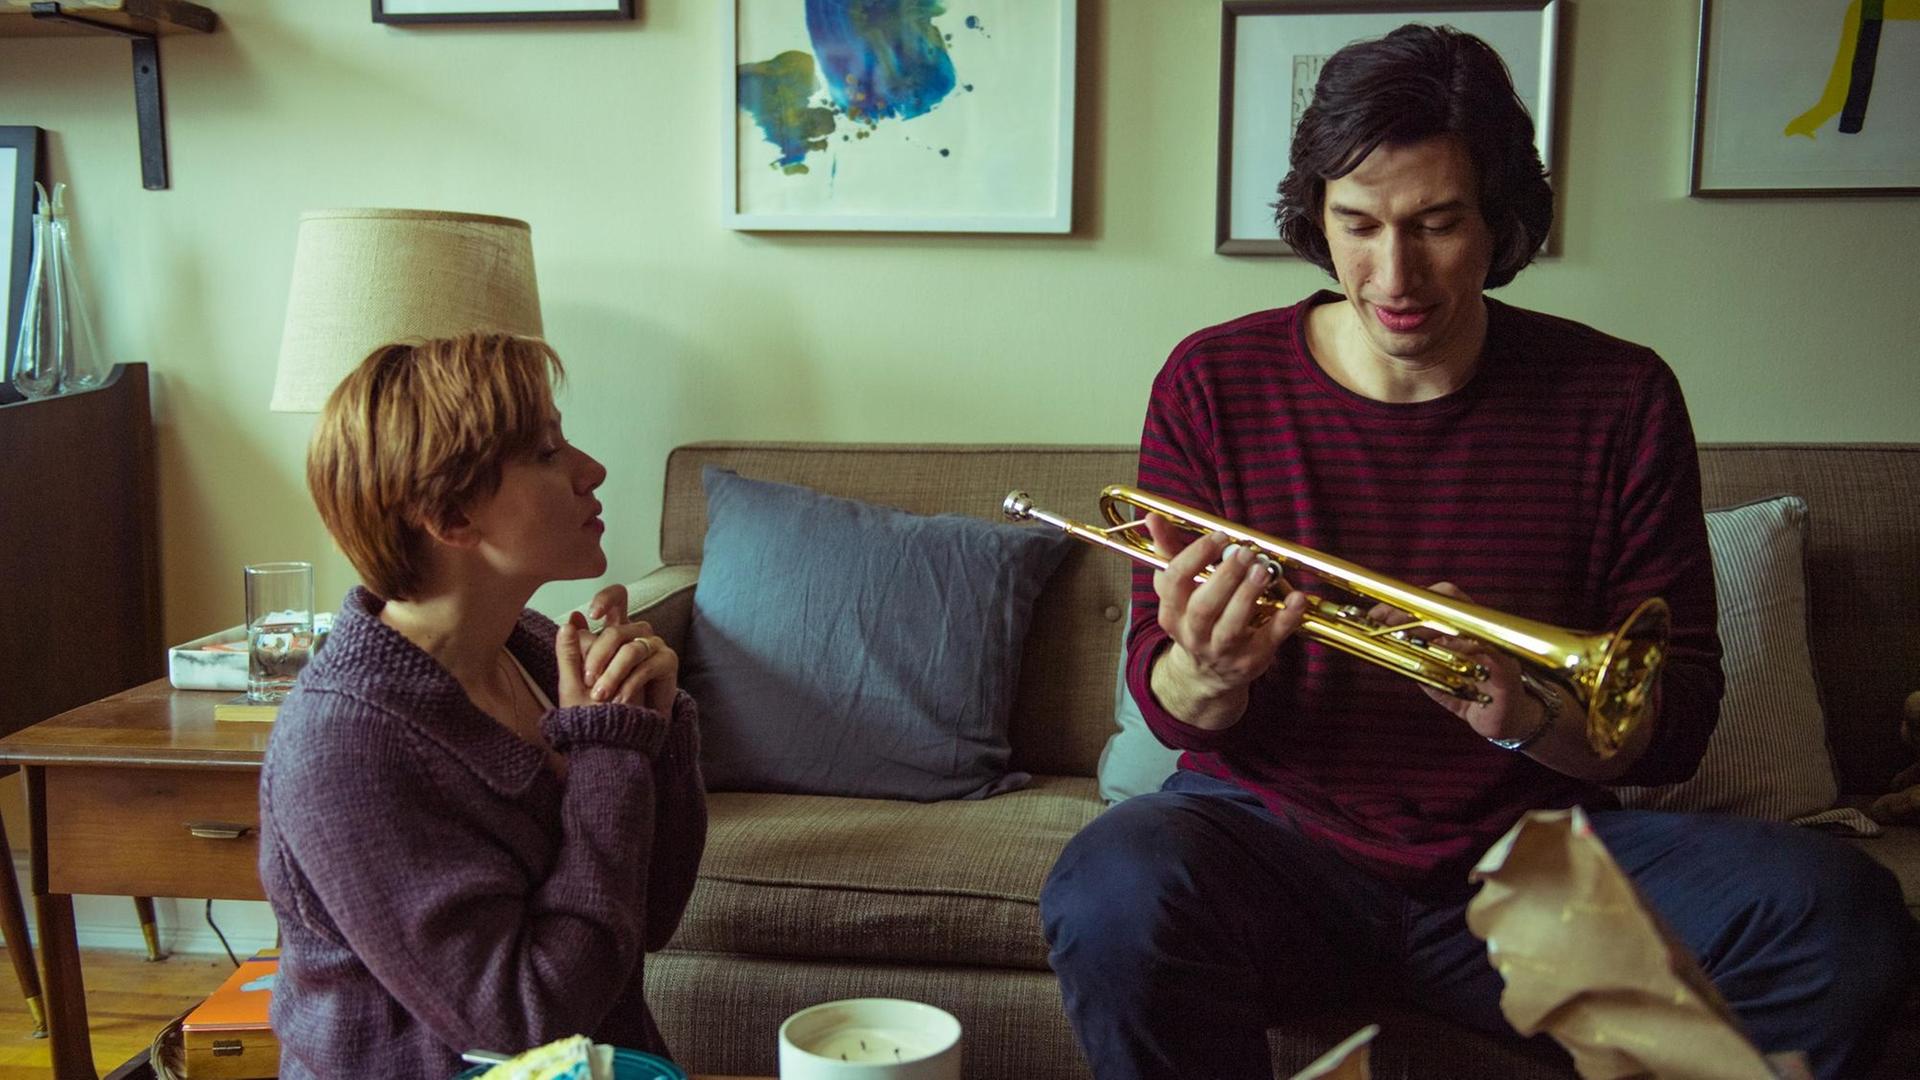 Szene aus dem Film "Marriage Story": Nicole (Scarlett Johansson) und Charlie (Adam Driver) zusammen im Wohnzimmer, er hat eine Trompete in der Hand.